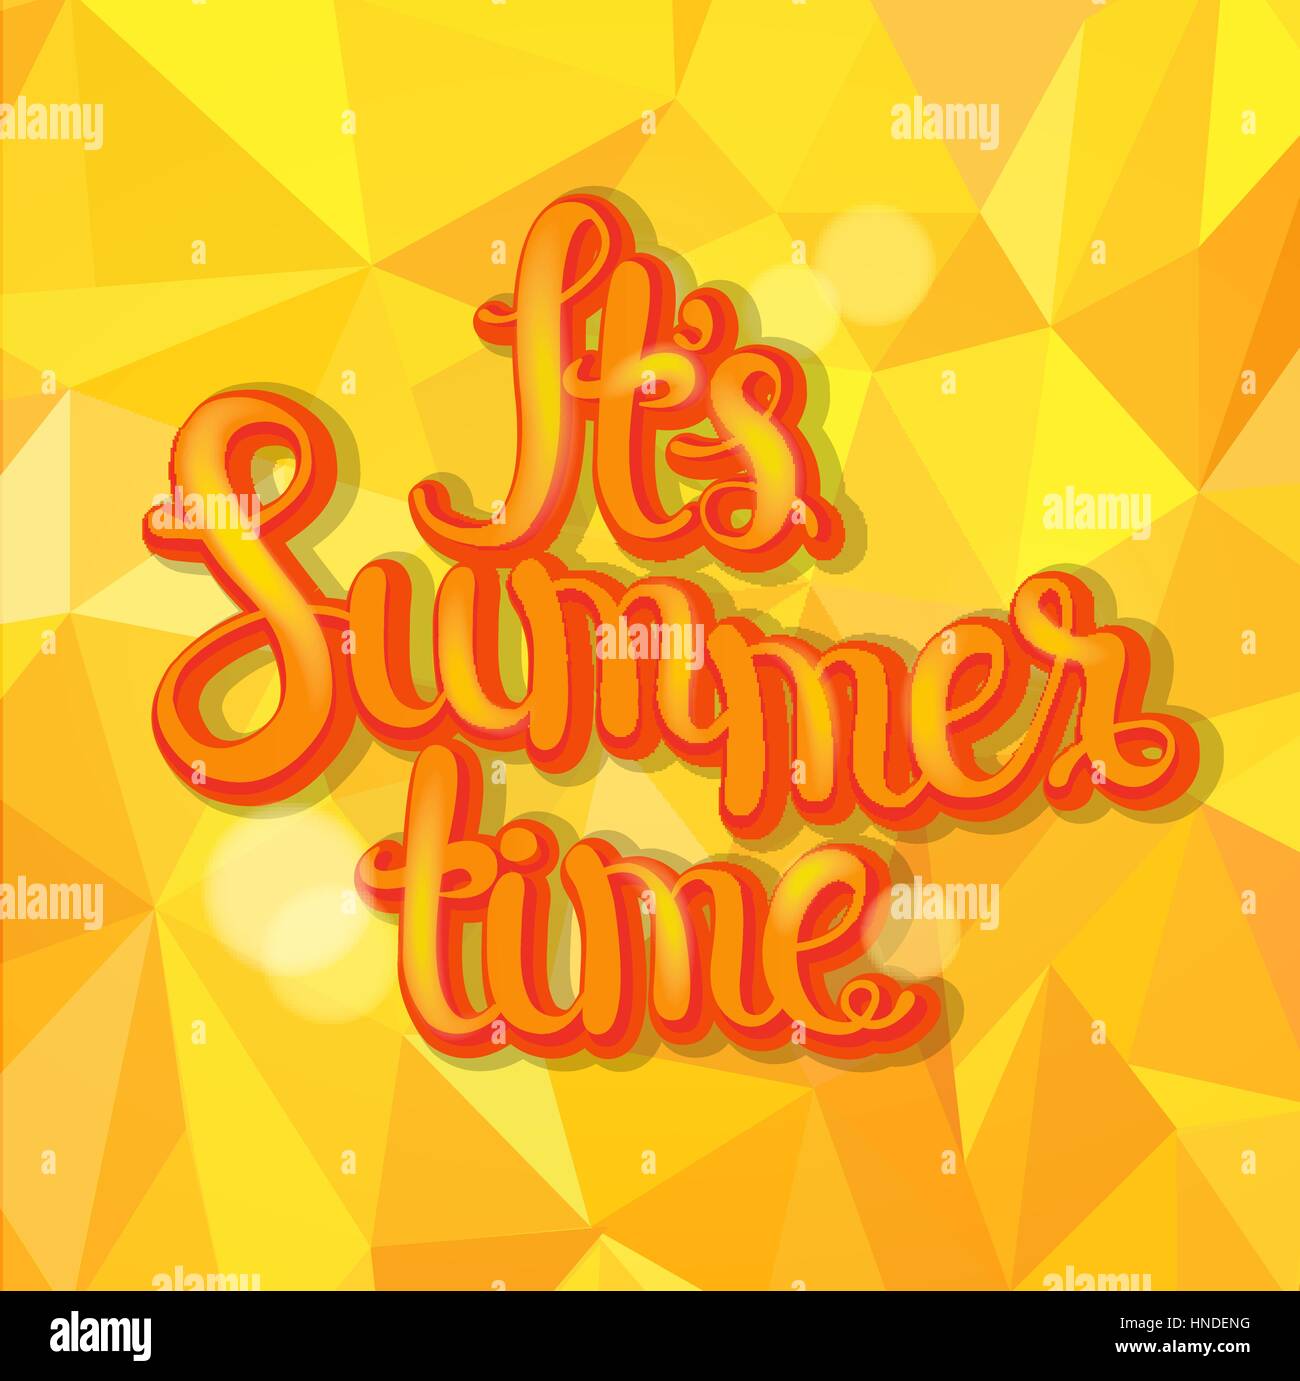 Sommer-Dreieck-Hintergrund mit Hand gemacht kalligraphische Inschrift. Sommer-Typografie-Design, Vektor-Illustration. Stock Vektor